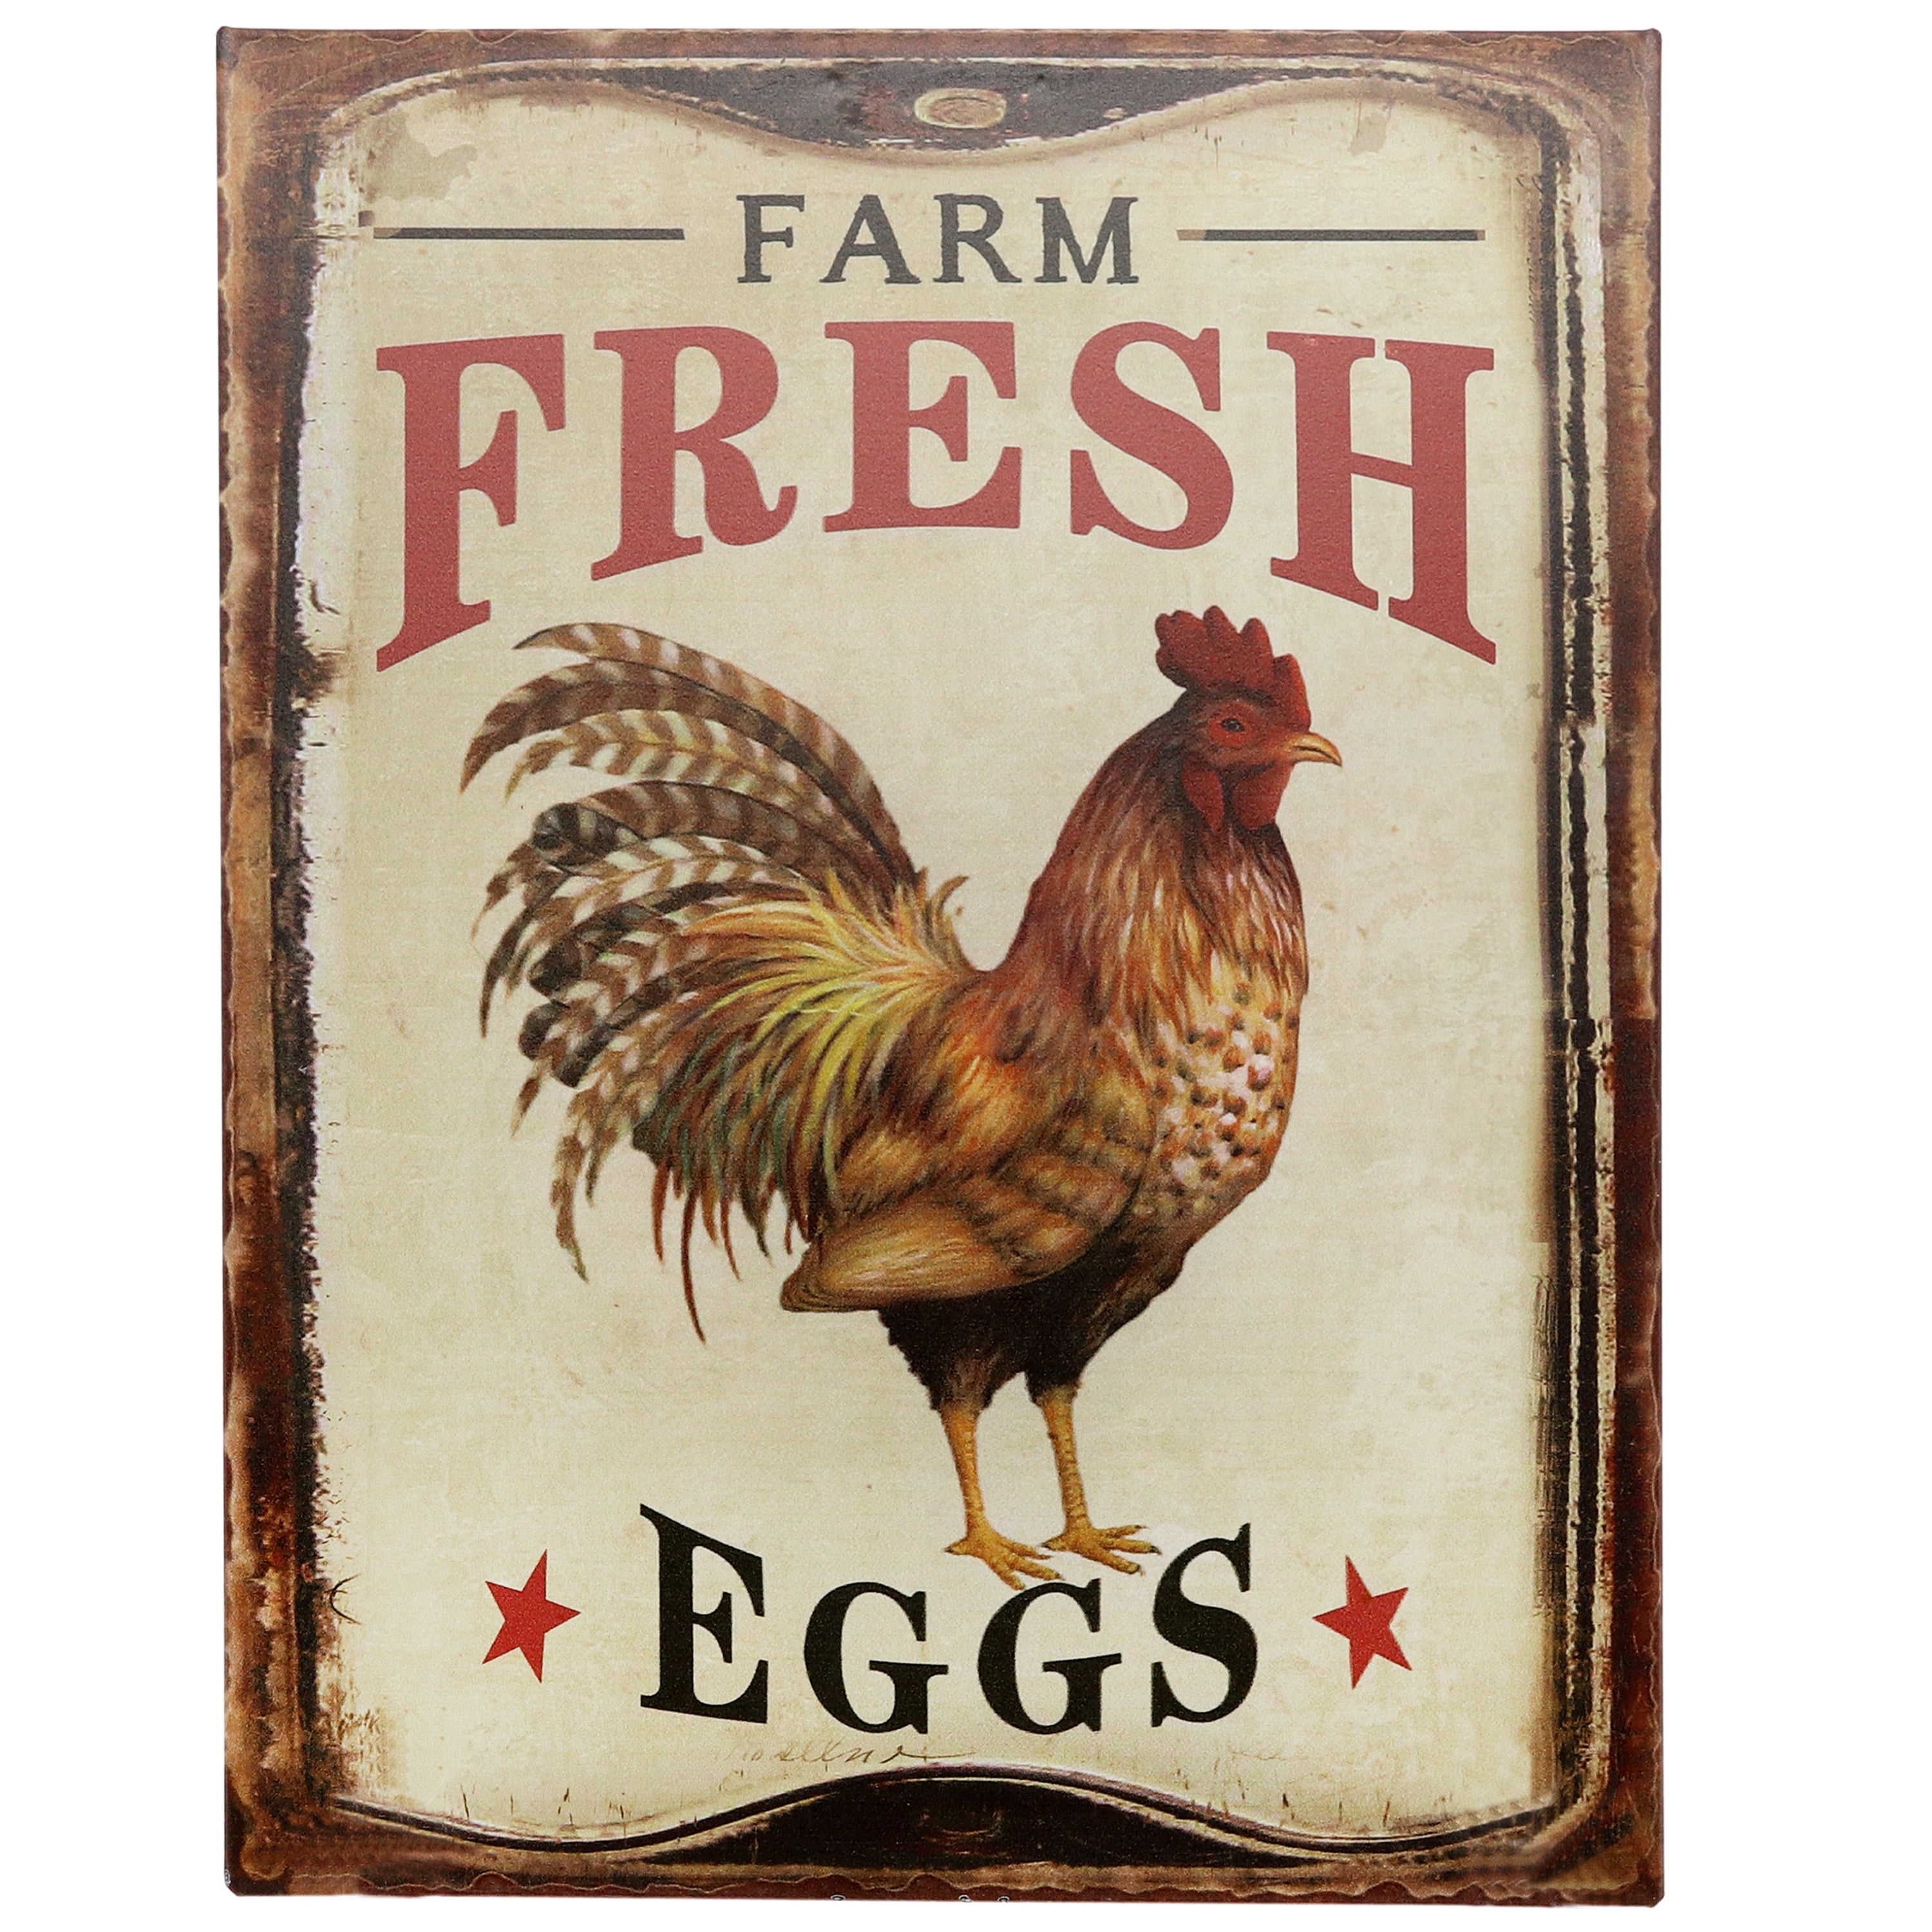 fresh eggs farm raised Metal Plaque Sign vintage retro Pub Bar Man Cave 